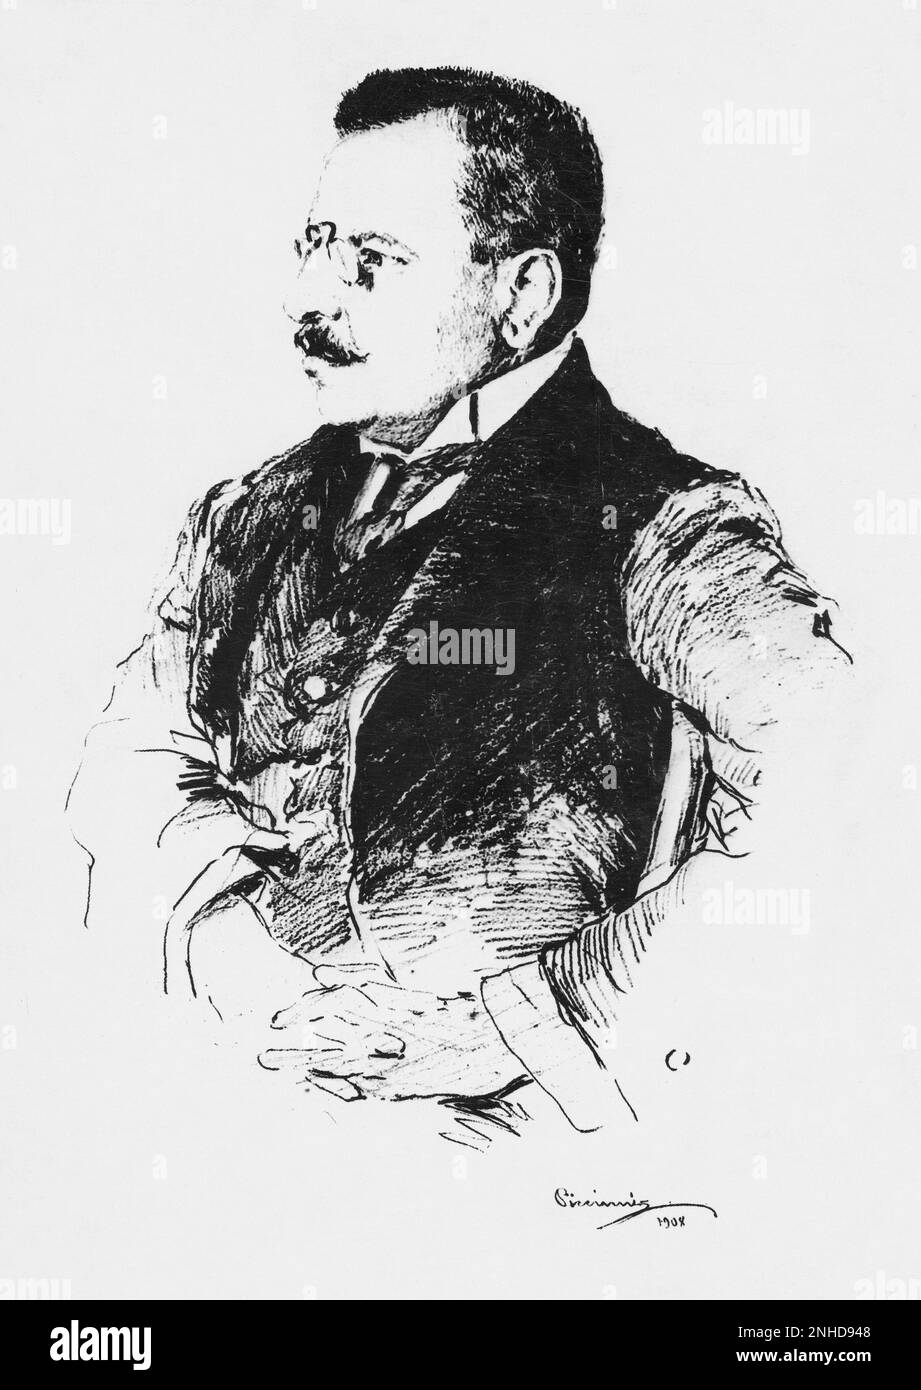 1908 : der gefeierte italienische Philosoph , Historiker und Literaturleser BENEDETTO CROCE ( Pescasseroli 1866 - Napoli 1952 ) . Portrait von Maler Piccinni - PHILOSOPHIE - STORICO - STORIA - GESCHICHTE - LETTERATURA - LETTERATO - UMANISTA - CRITICAL LETTERARIO - SCRITTORE - WRITER - studioso - ANTIFASCISTA - FASCHIST - ANTIFASCHIST - FASCHISMUS - ESTETICA - FILOSOFIA - FILOSOFO - AZETICS - AZINICS - Pincenez - profilo - Profil - Baffi - Schnurrbart --- Archivio GBB Stockfoto